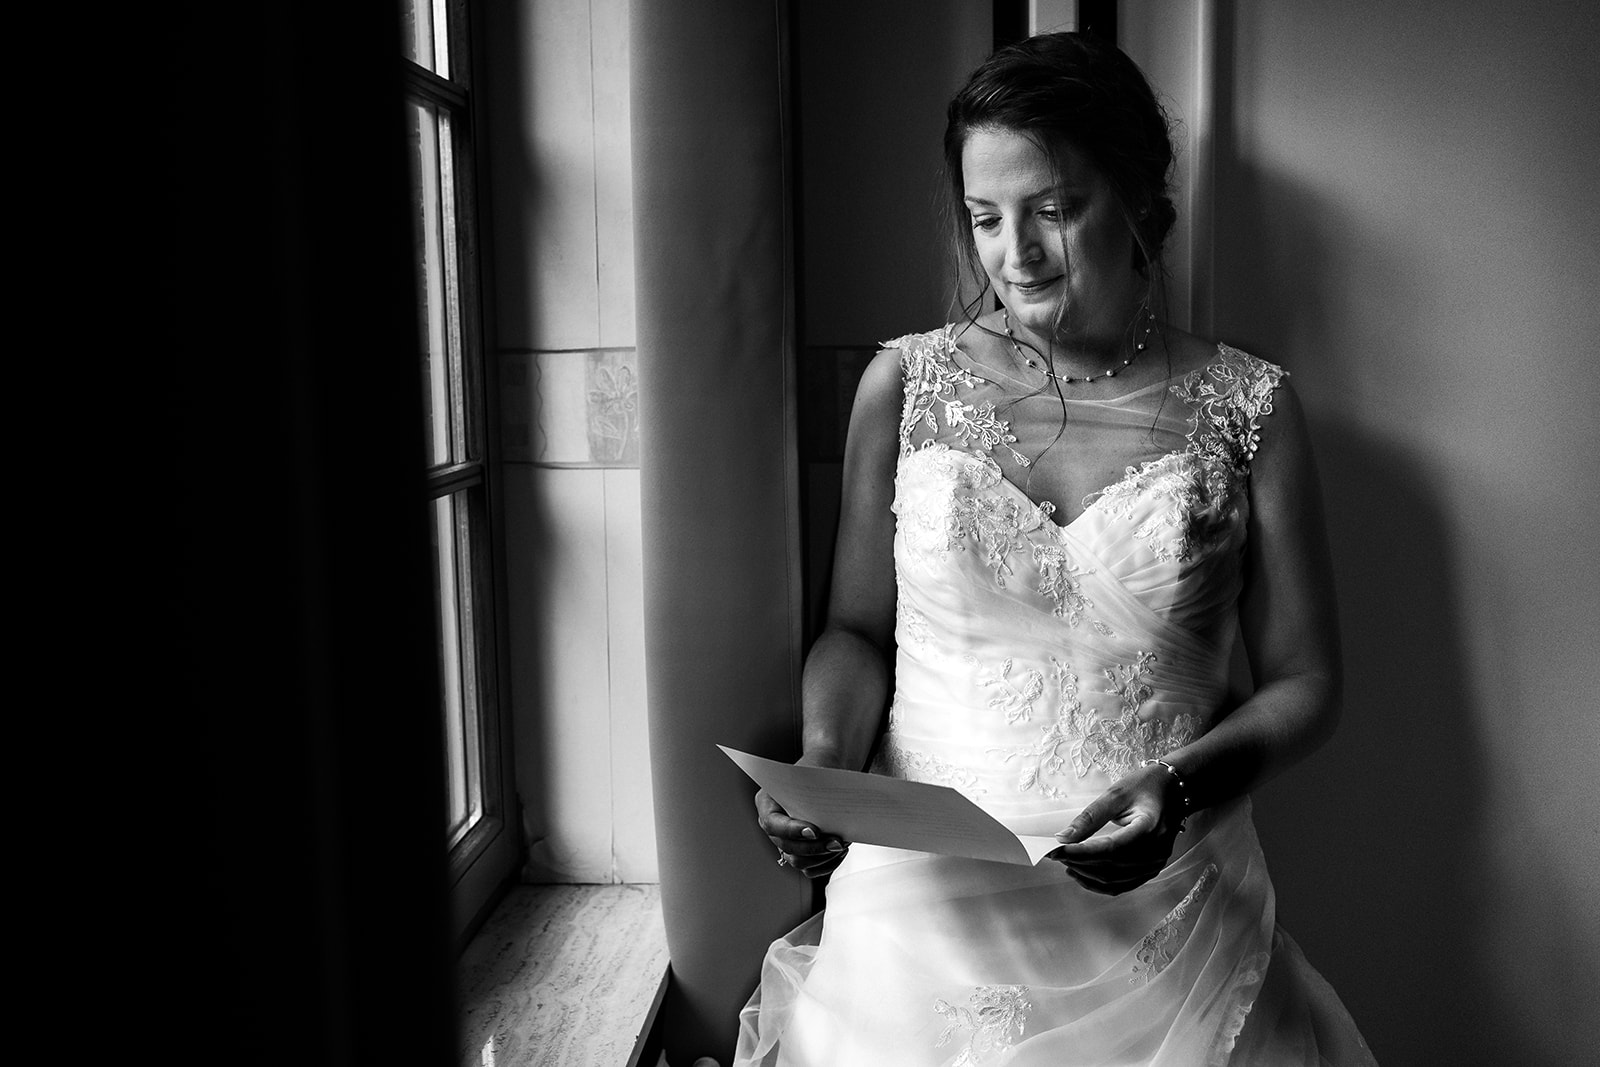 La mariée lit une lettre écrit par son futur époux avant son mariage